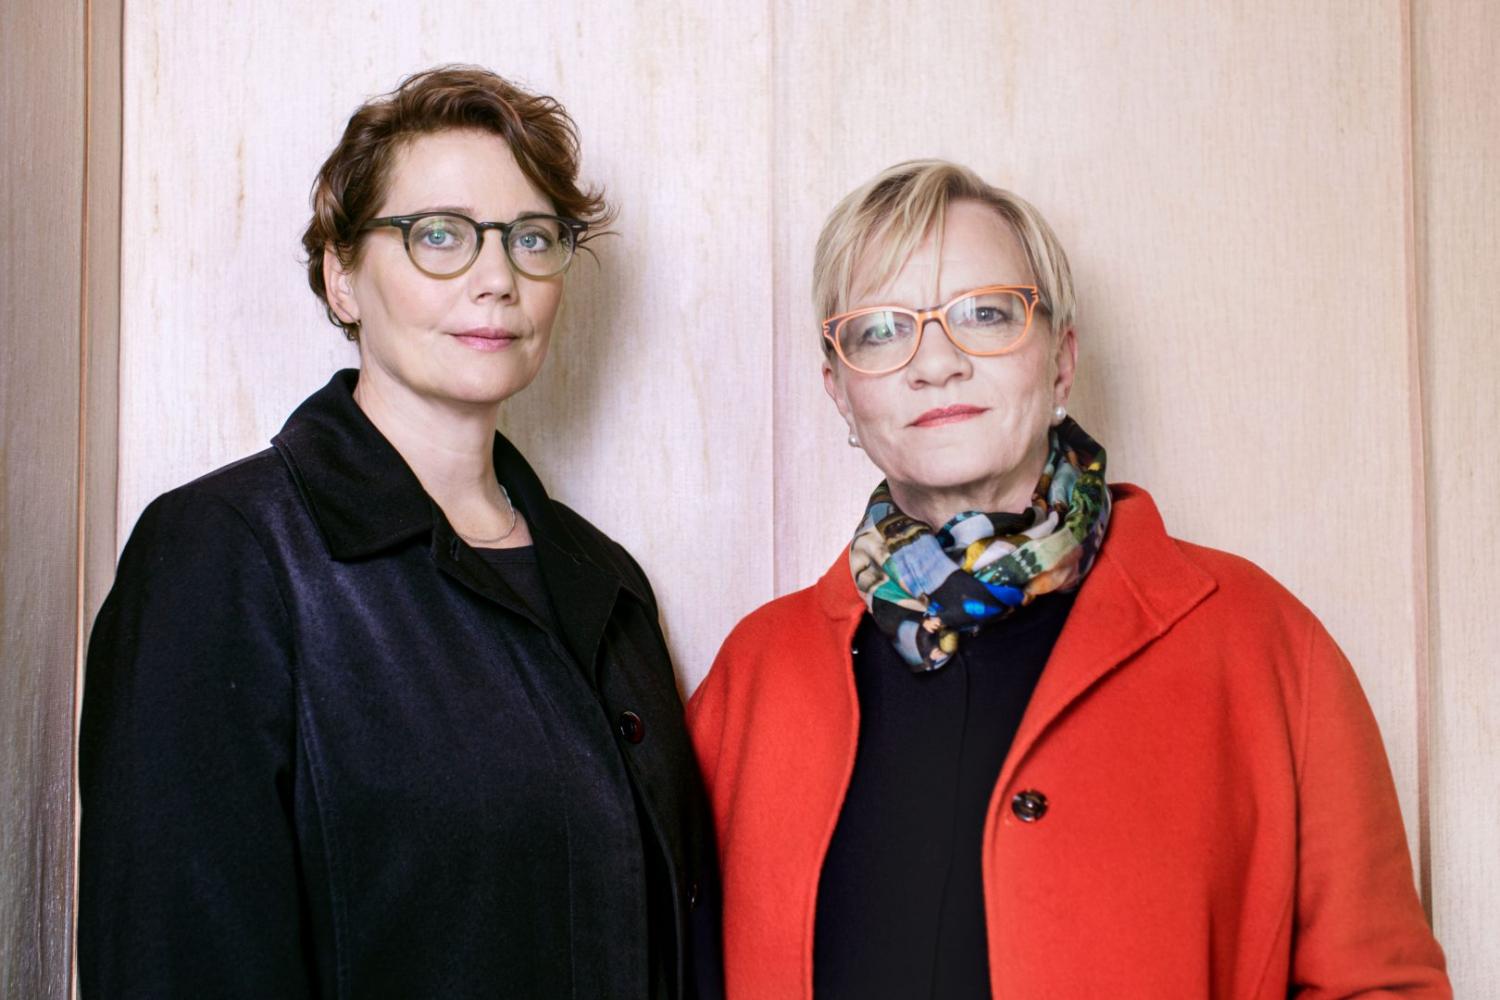 Taru Tappola und Pirkko Siitari, Kuratorinnen der ersten Helsinki-Biennale